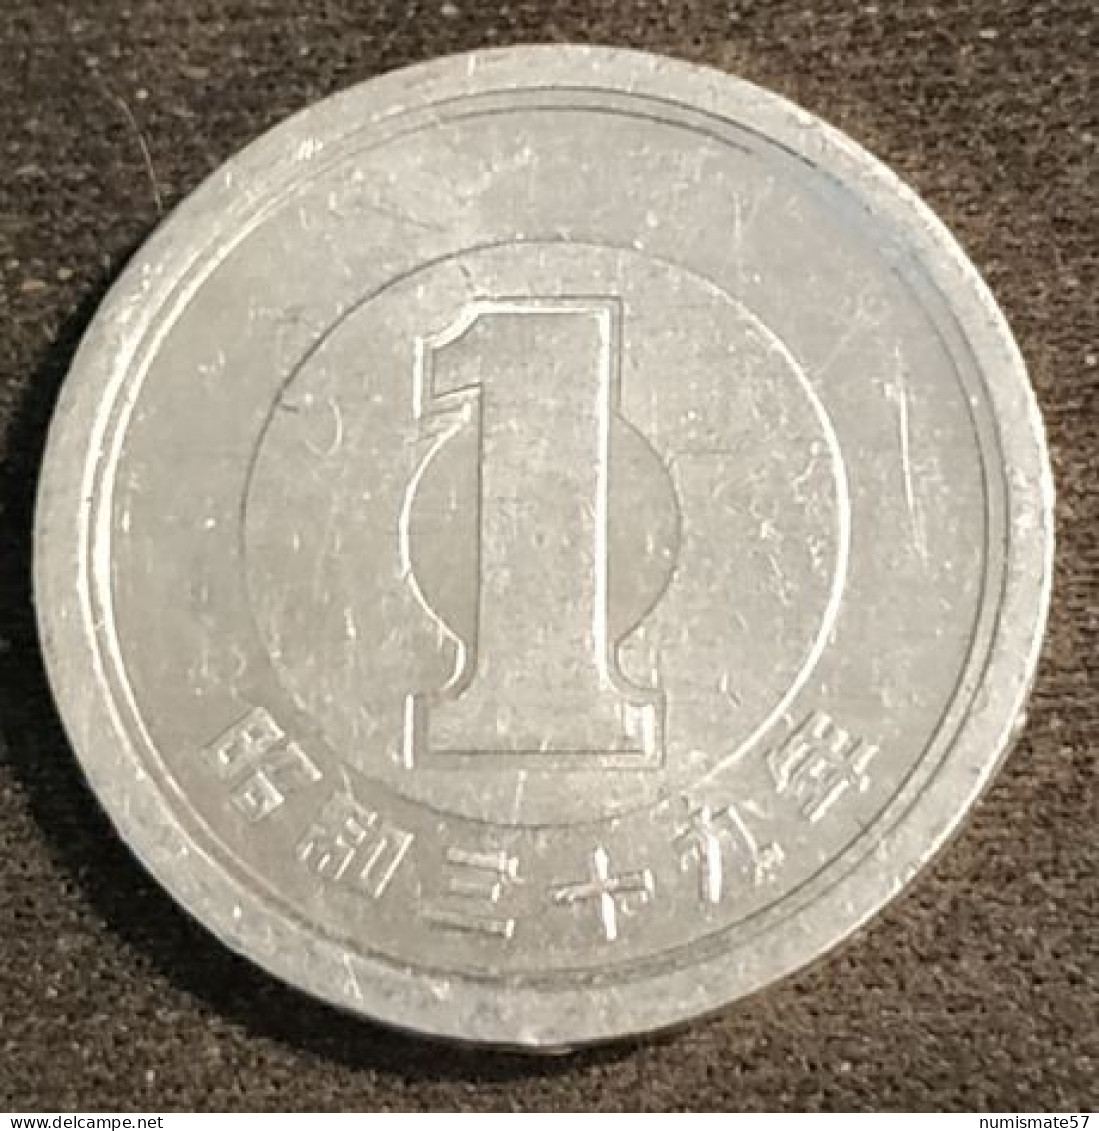 JAPON - JAPAN - 1 YEN 1964 - Shōwa - Year 39 - KM 74 - Japon